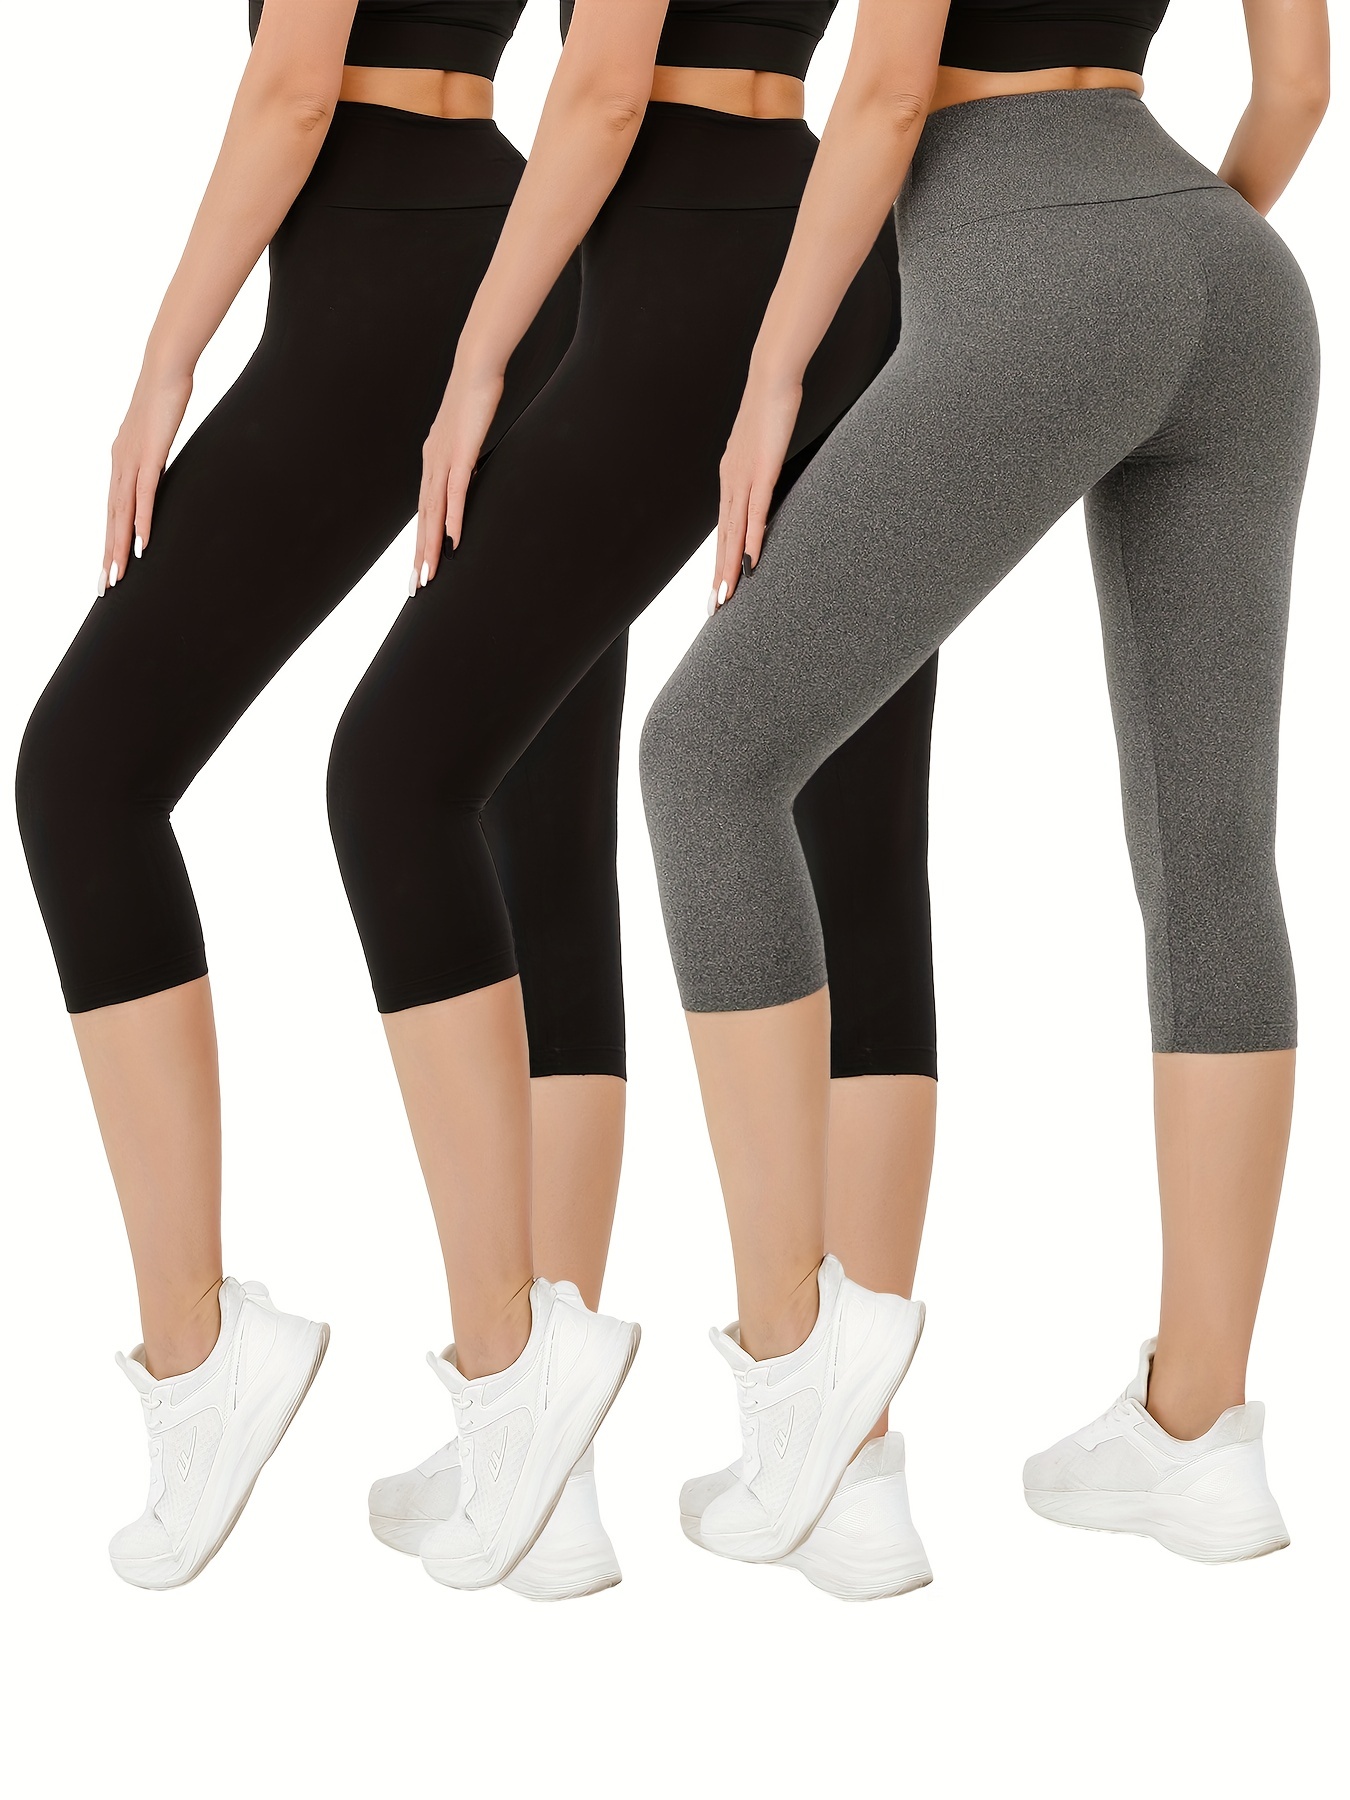 G4Free Capri Leggings for Women High Waist Jean Leggings Workout